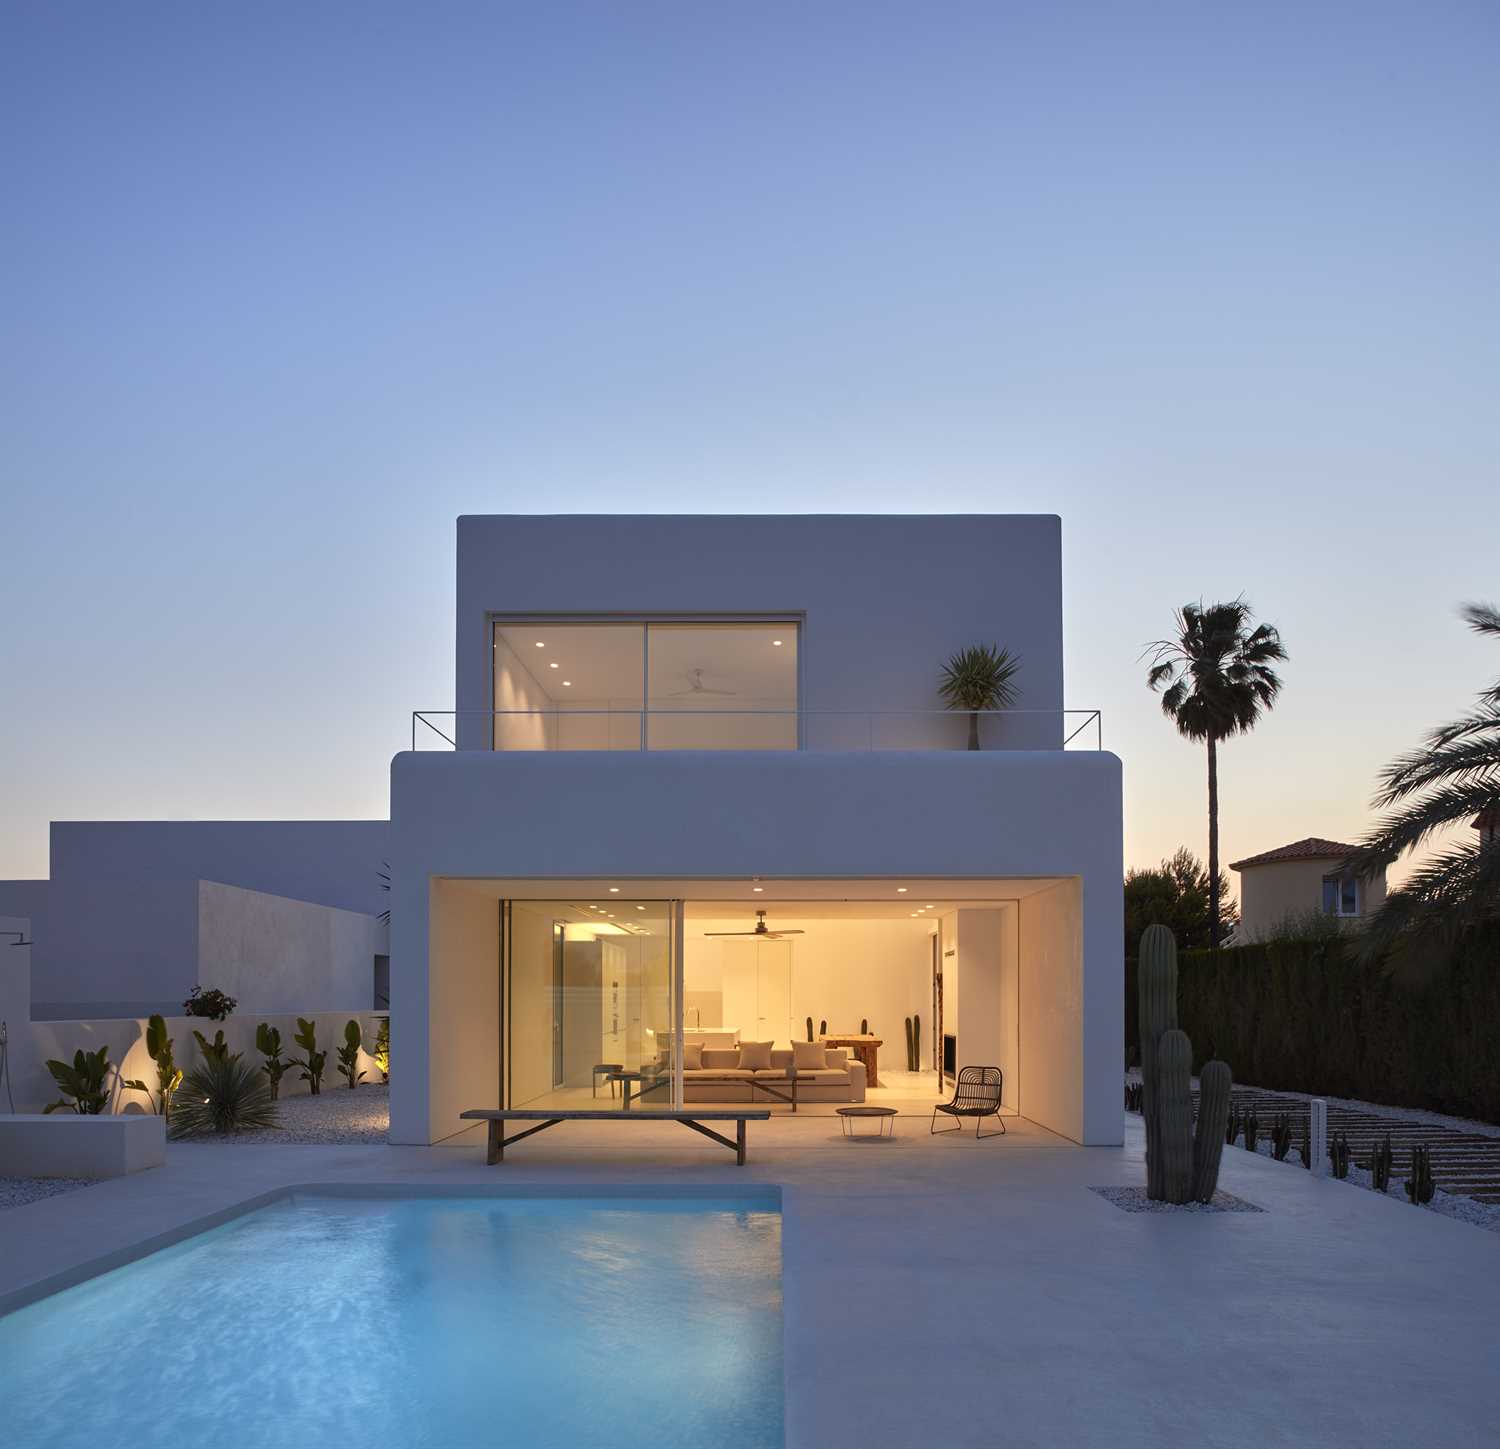 Microciment blanc sur la façade et la piscine d'une maison moderne.